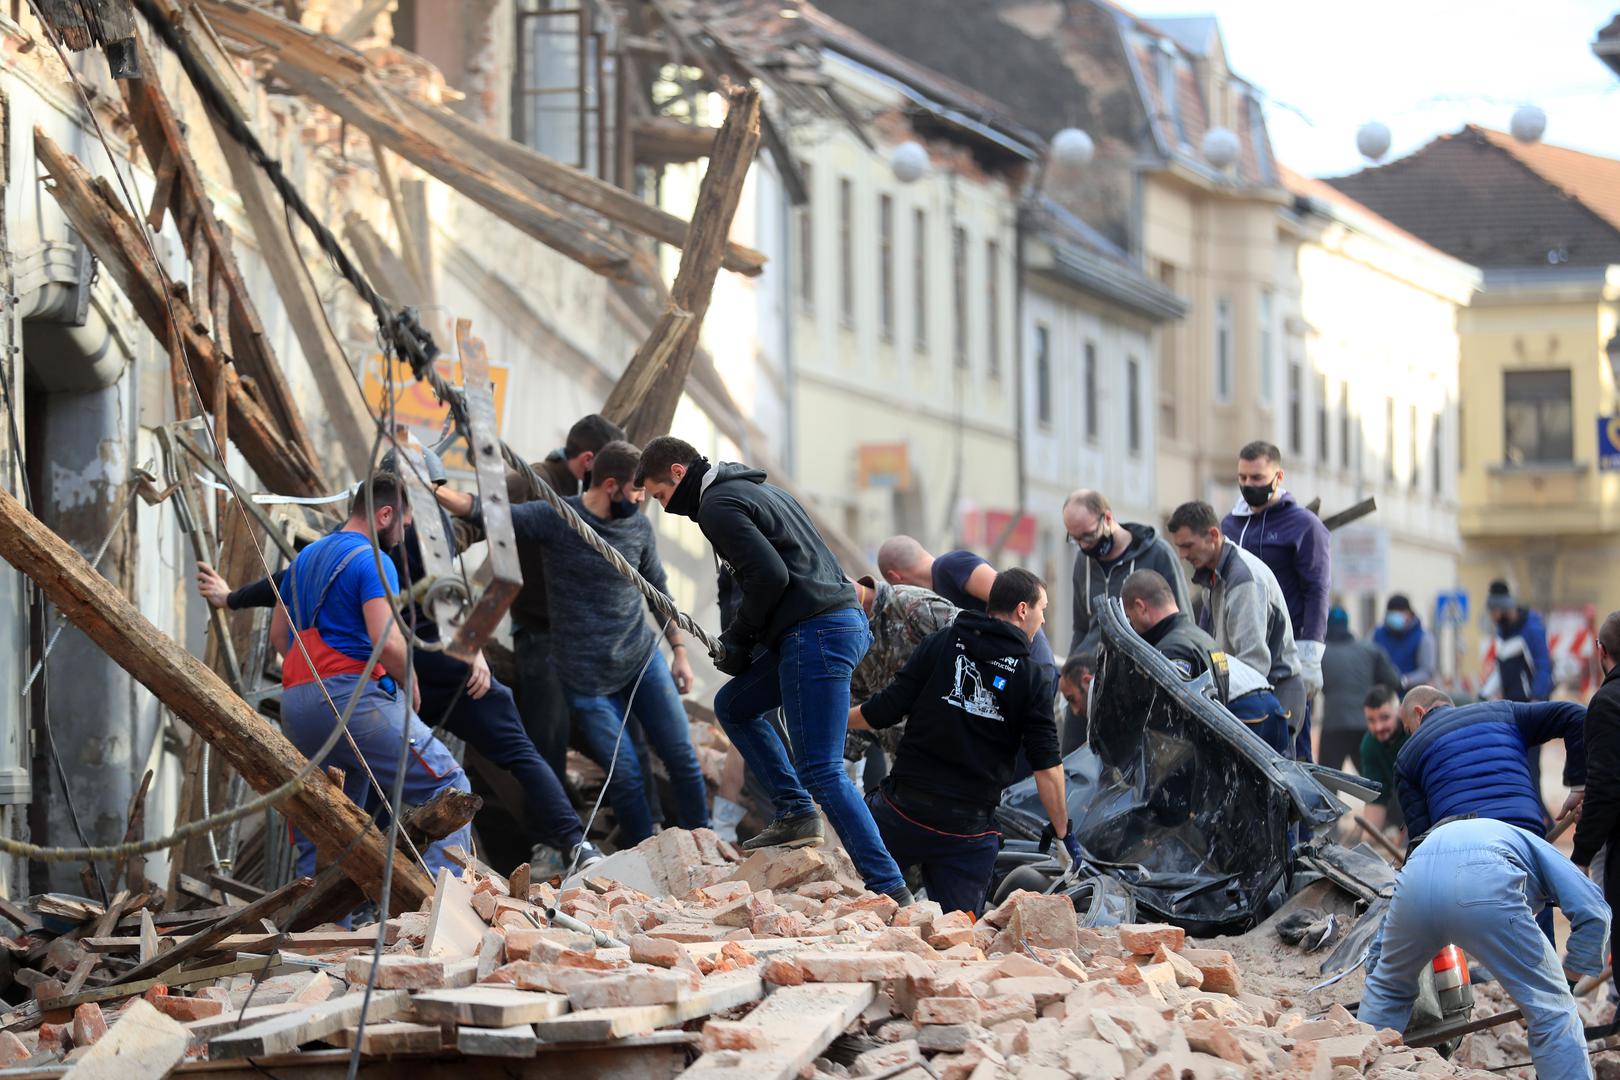 29.12.2020., Petrinja - Posljedice jakog potresa jacine 6.3 po Richteru pogodio je Petrinju, Sisak i okolicu te nanio veliku stetu. Photo: Slavko Midzor/PIXSELL